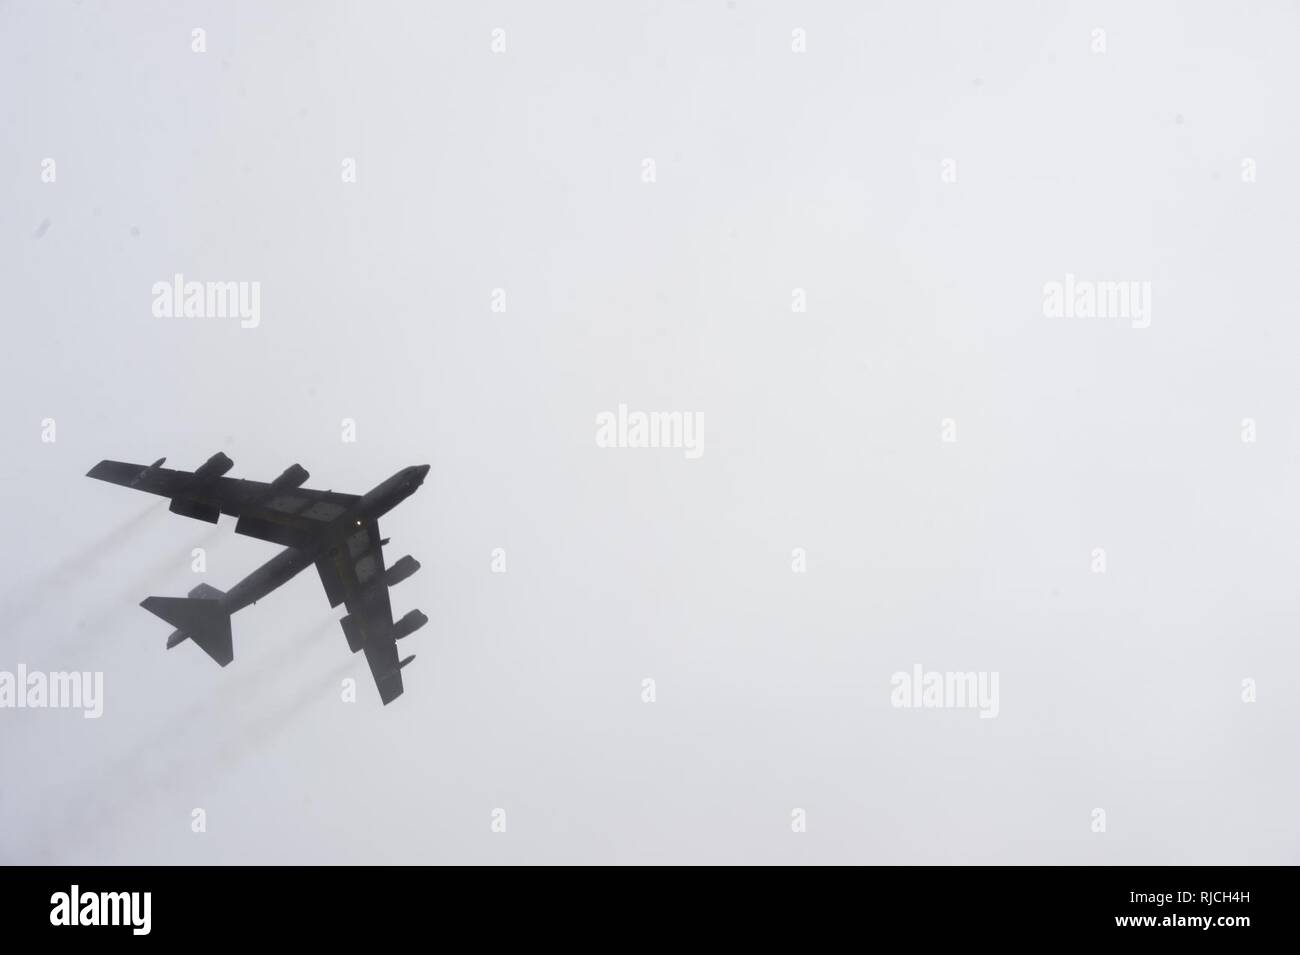 Un B-52 Stratofortress survole la piste de RAF Fairford, Angleterre le 9 janvier 2018. L'avion de Minot Air Force Base, N.D., déployée à RAF Fairford pour effectuer l'intégration et la formation. théâtre Le déploiement de bombardiers stratégiques à l'exercice aide à Royaume-uni United States Air Forces in Europe's emplacement avancé d'opérations sur les bombardiers. Avec formation de partenaires, aux nations alliées et d'autres unités de l'US Air Force contribue à la 5e Escadre bombe prête à contribuer et forces postured. Banque D'Images